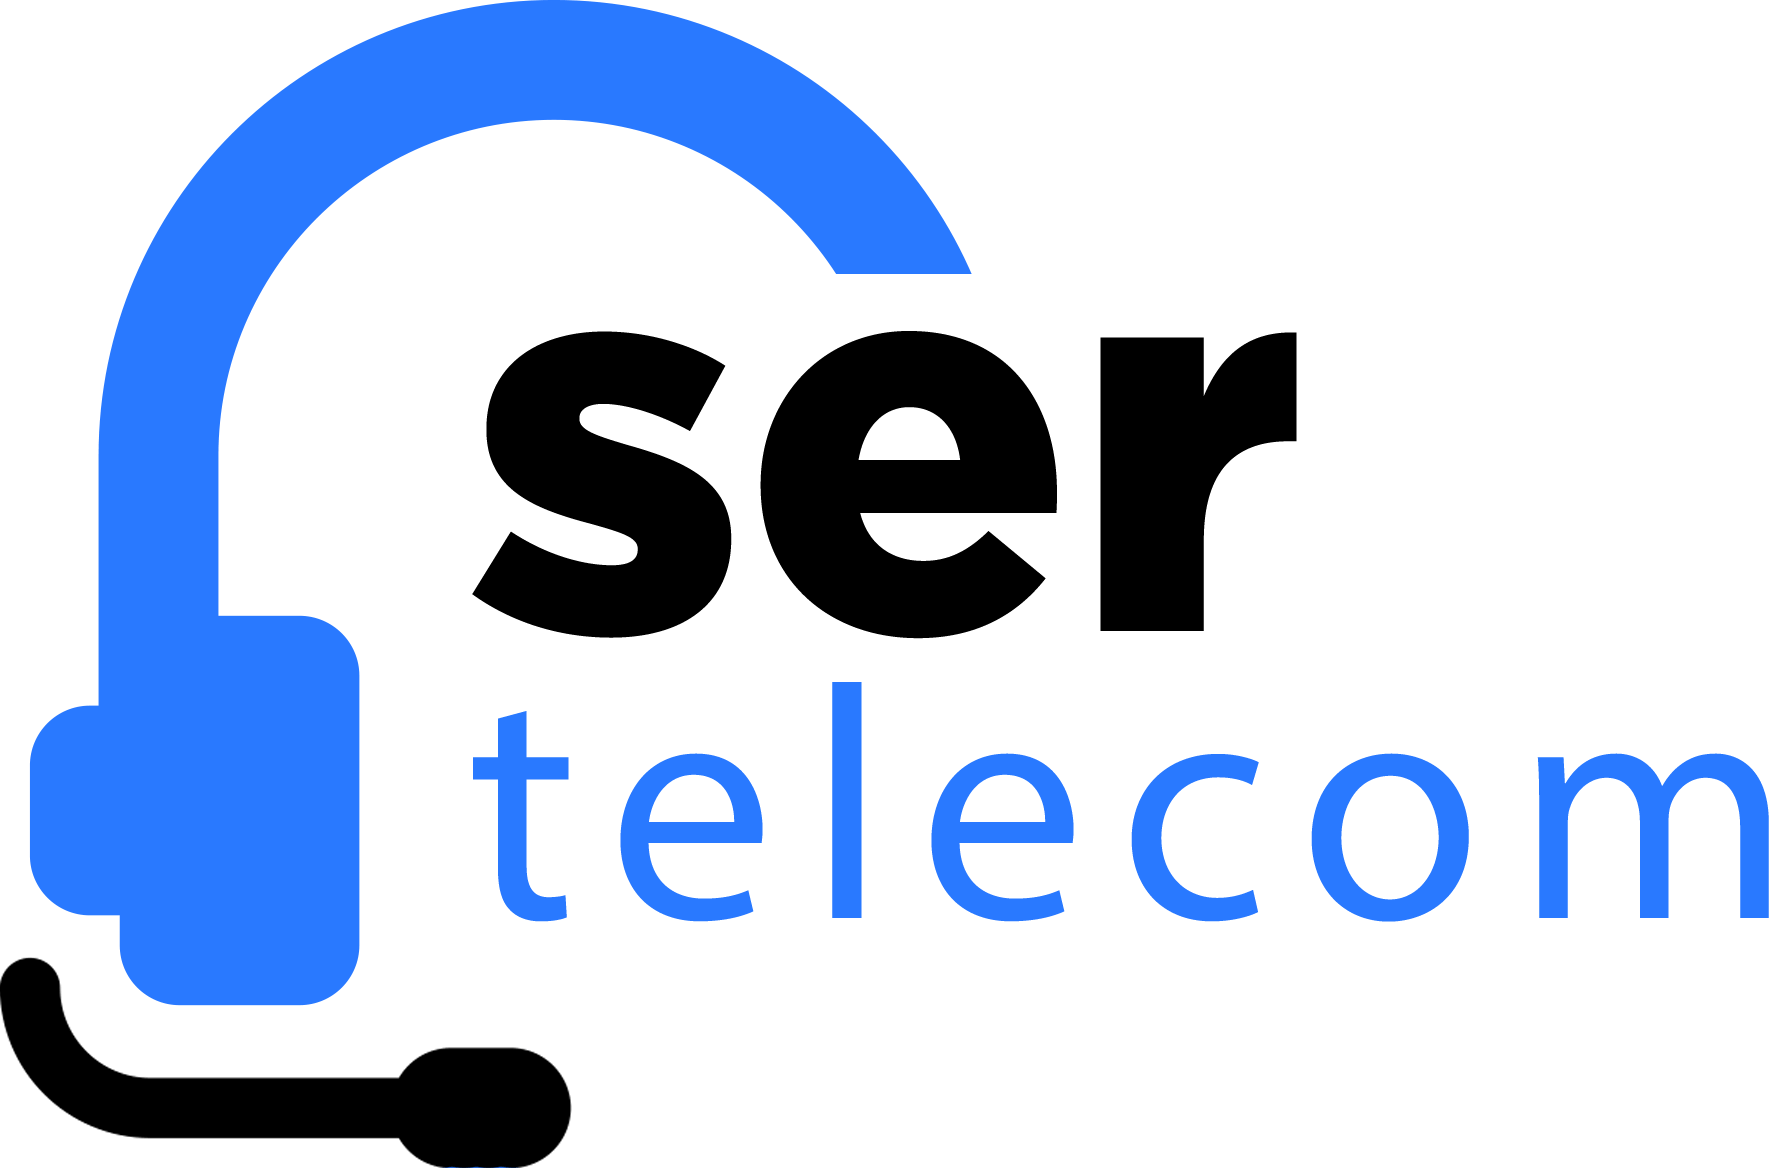 sertelecom logo